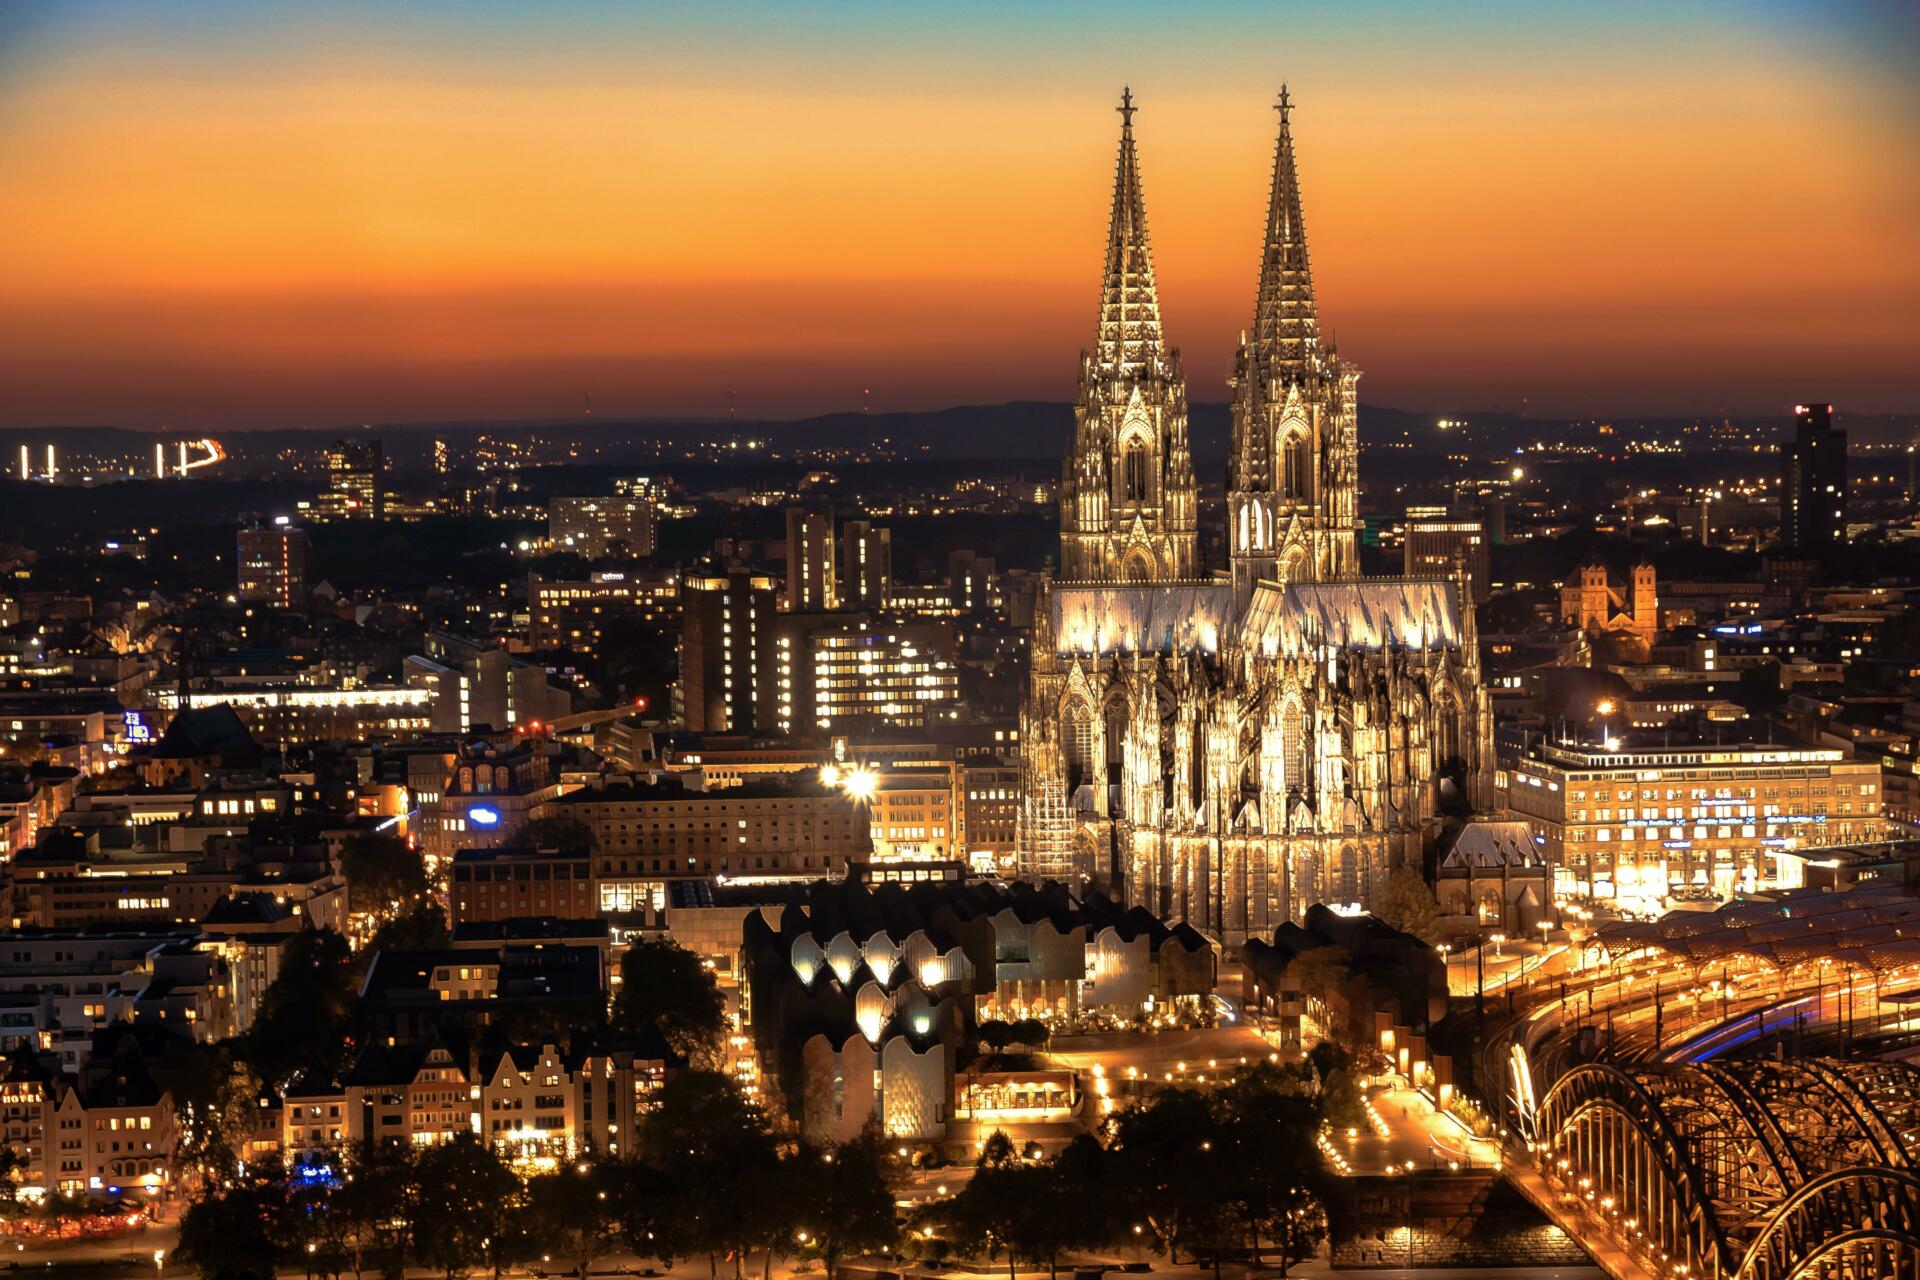 Pogled na mesto Köln osvetljeno z lučmi, na sredini je Kölnska katedrala